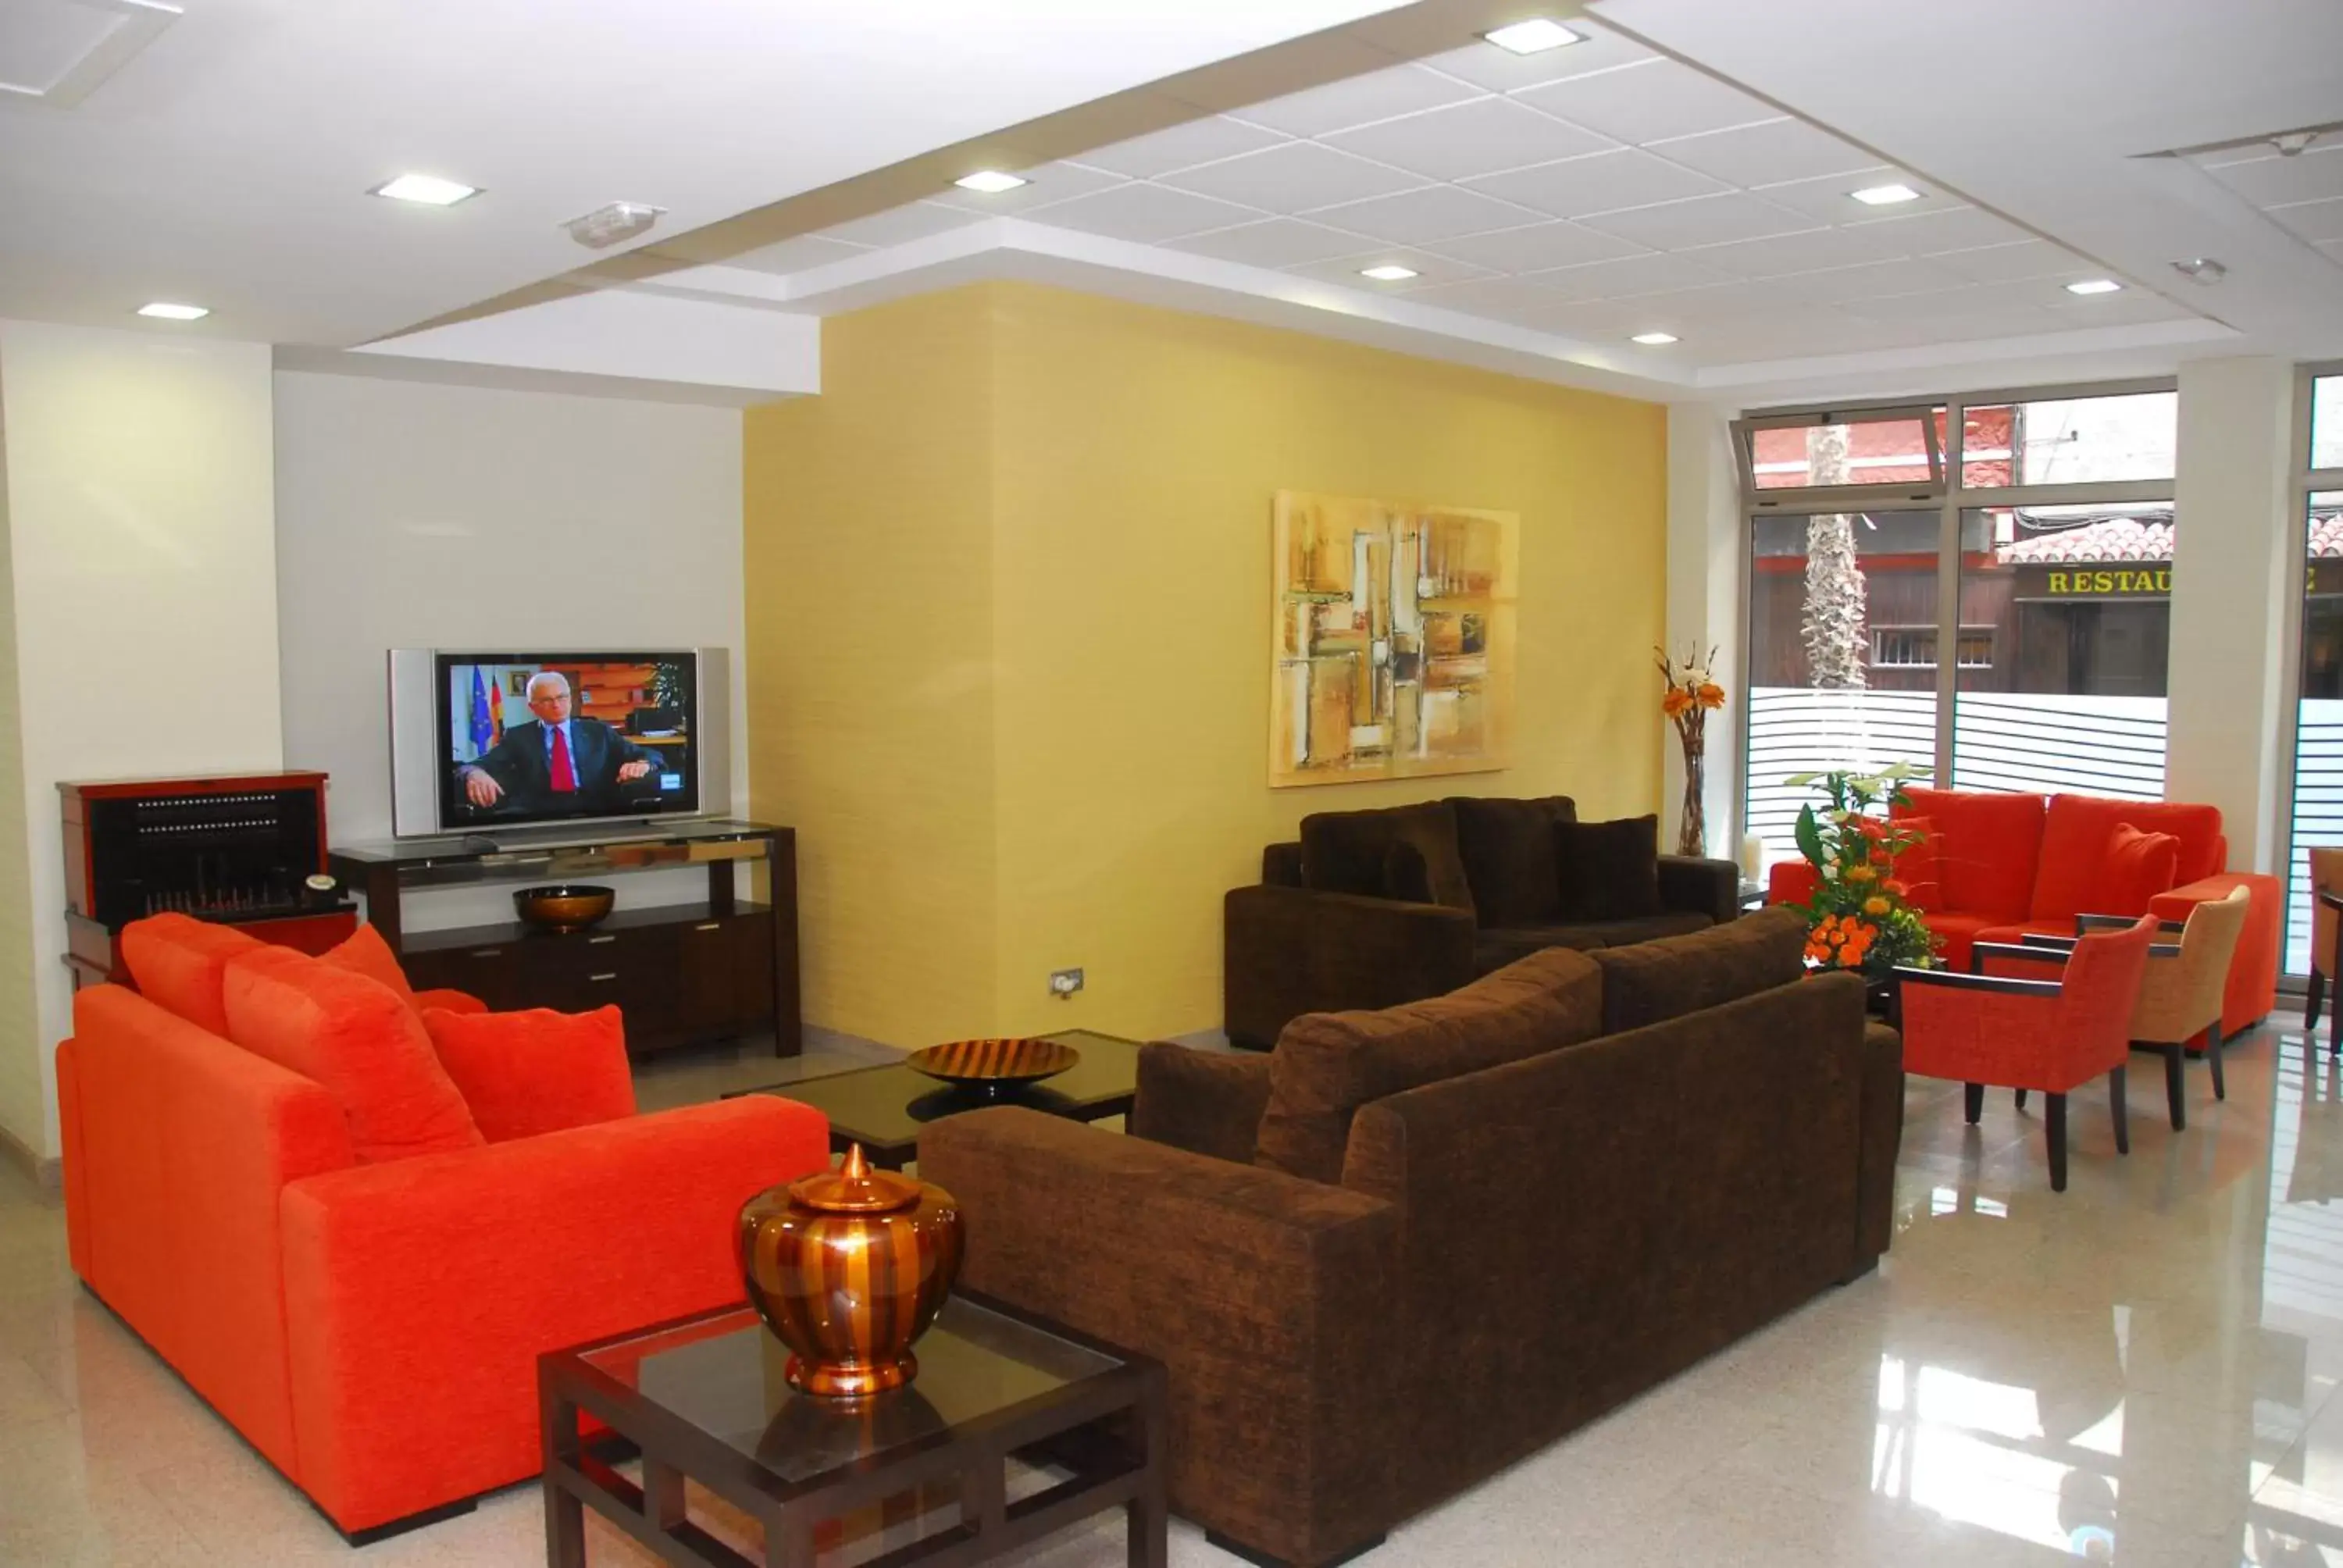 Lobby or reception, Lobby/Reception in Hotel Pujol